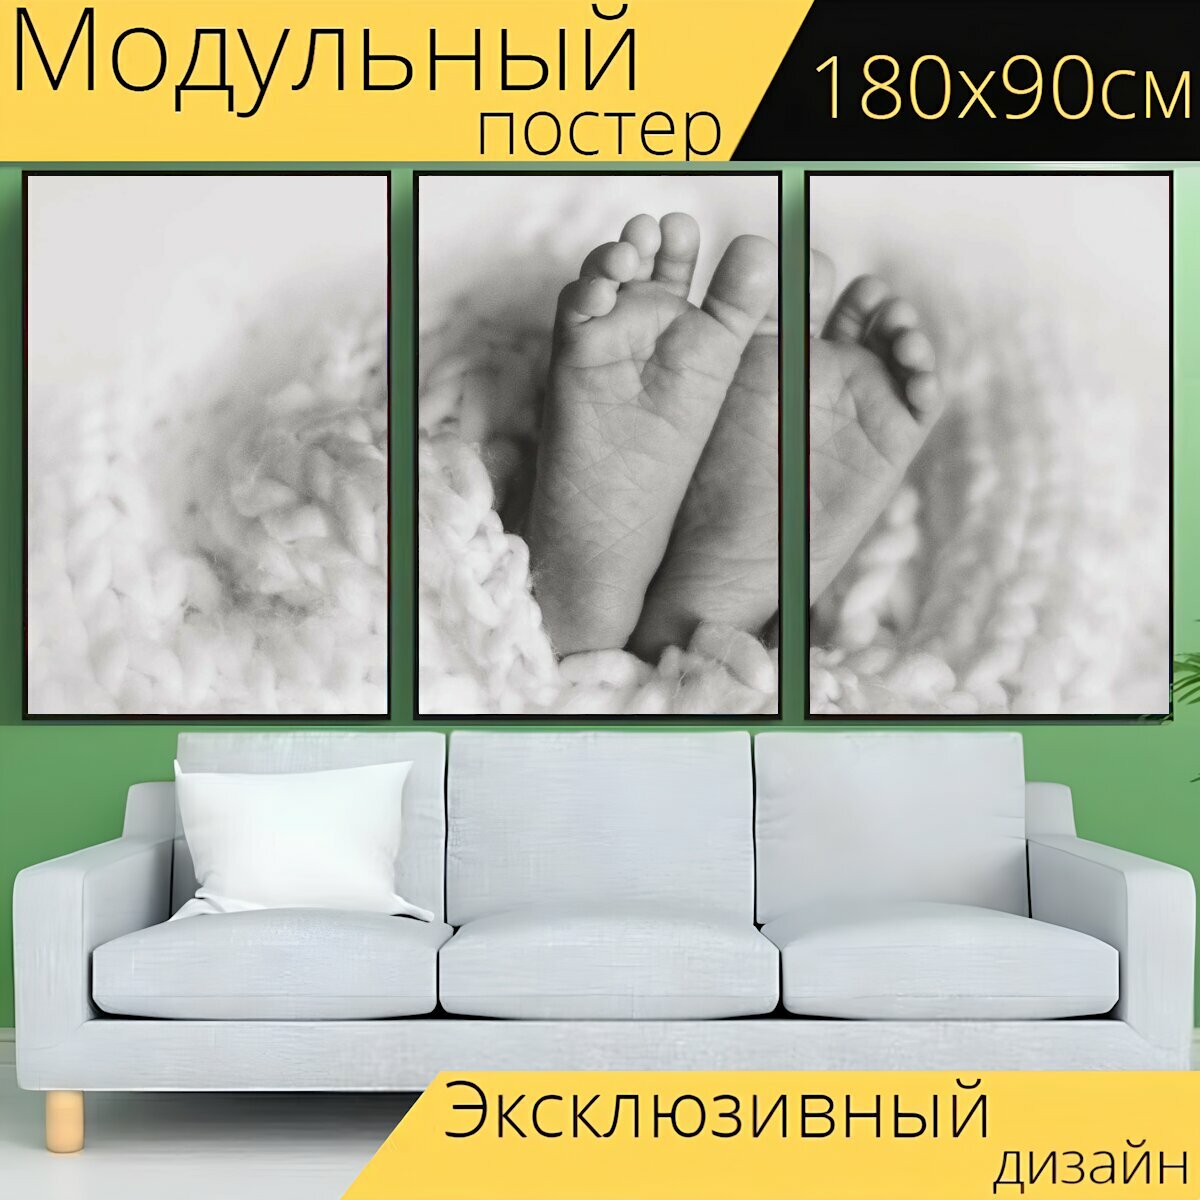 Модульный постер "Детка, ребенок, новорожденный" 180 x 90 см. для интерьера